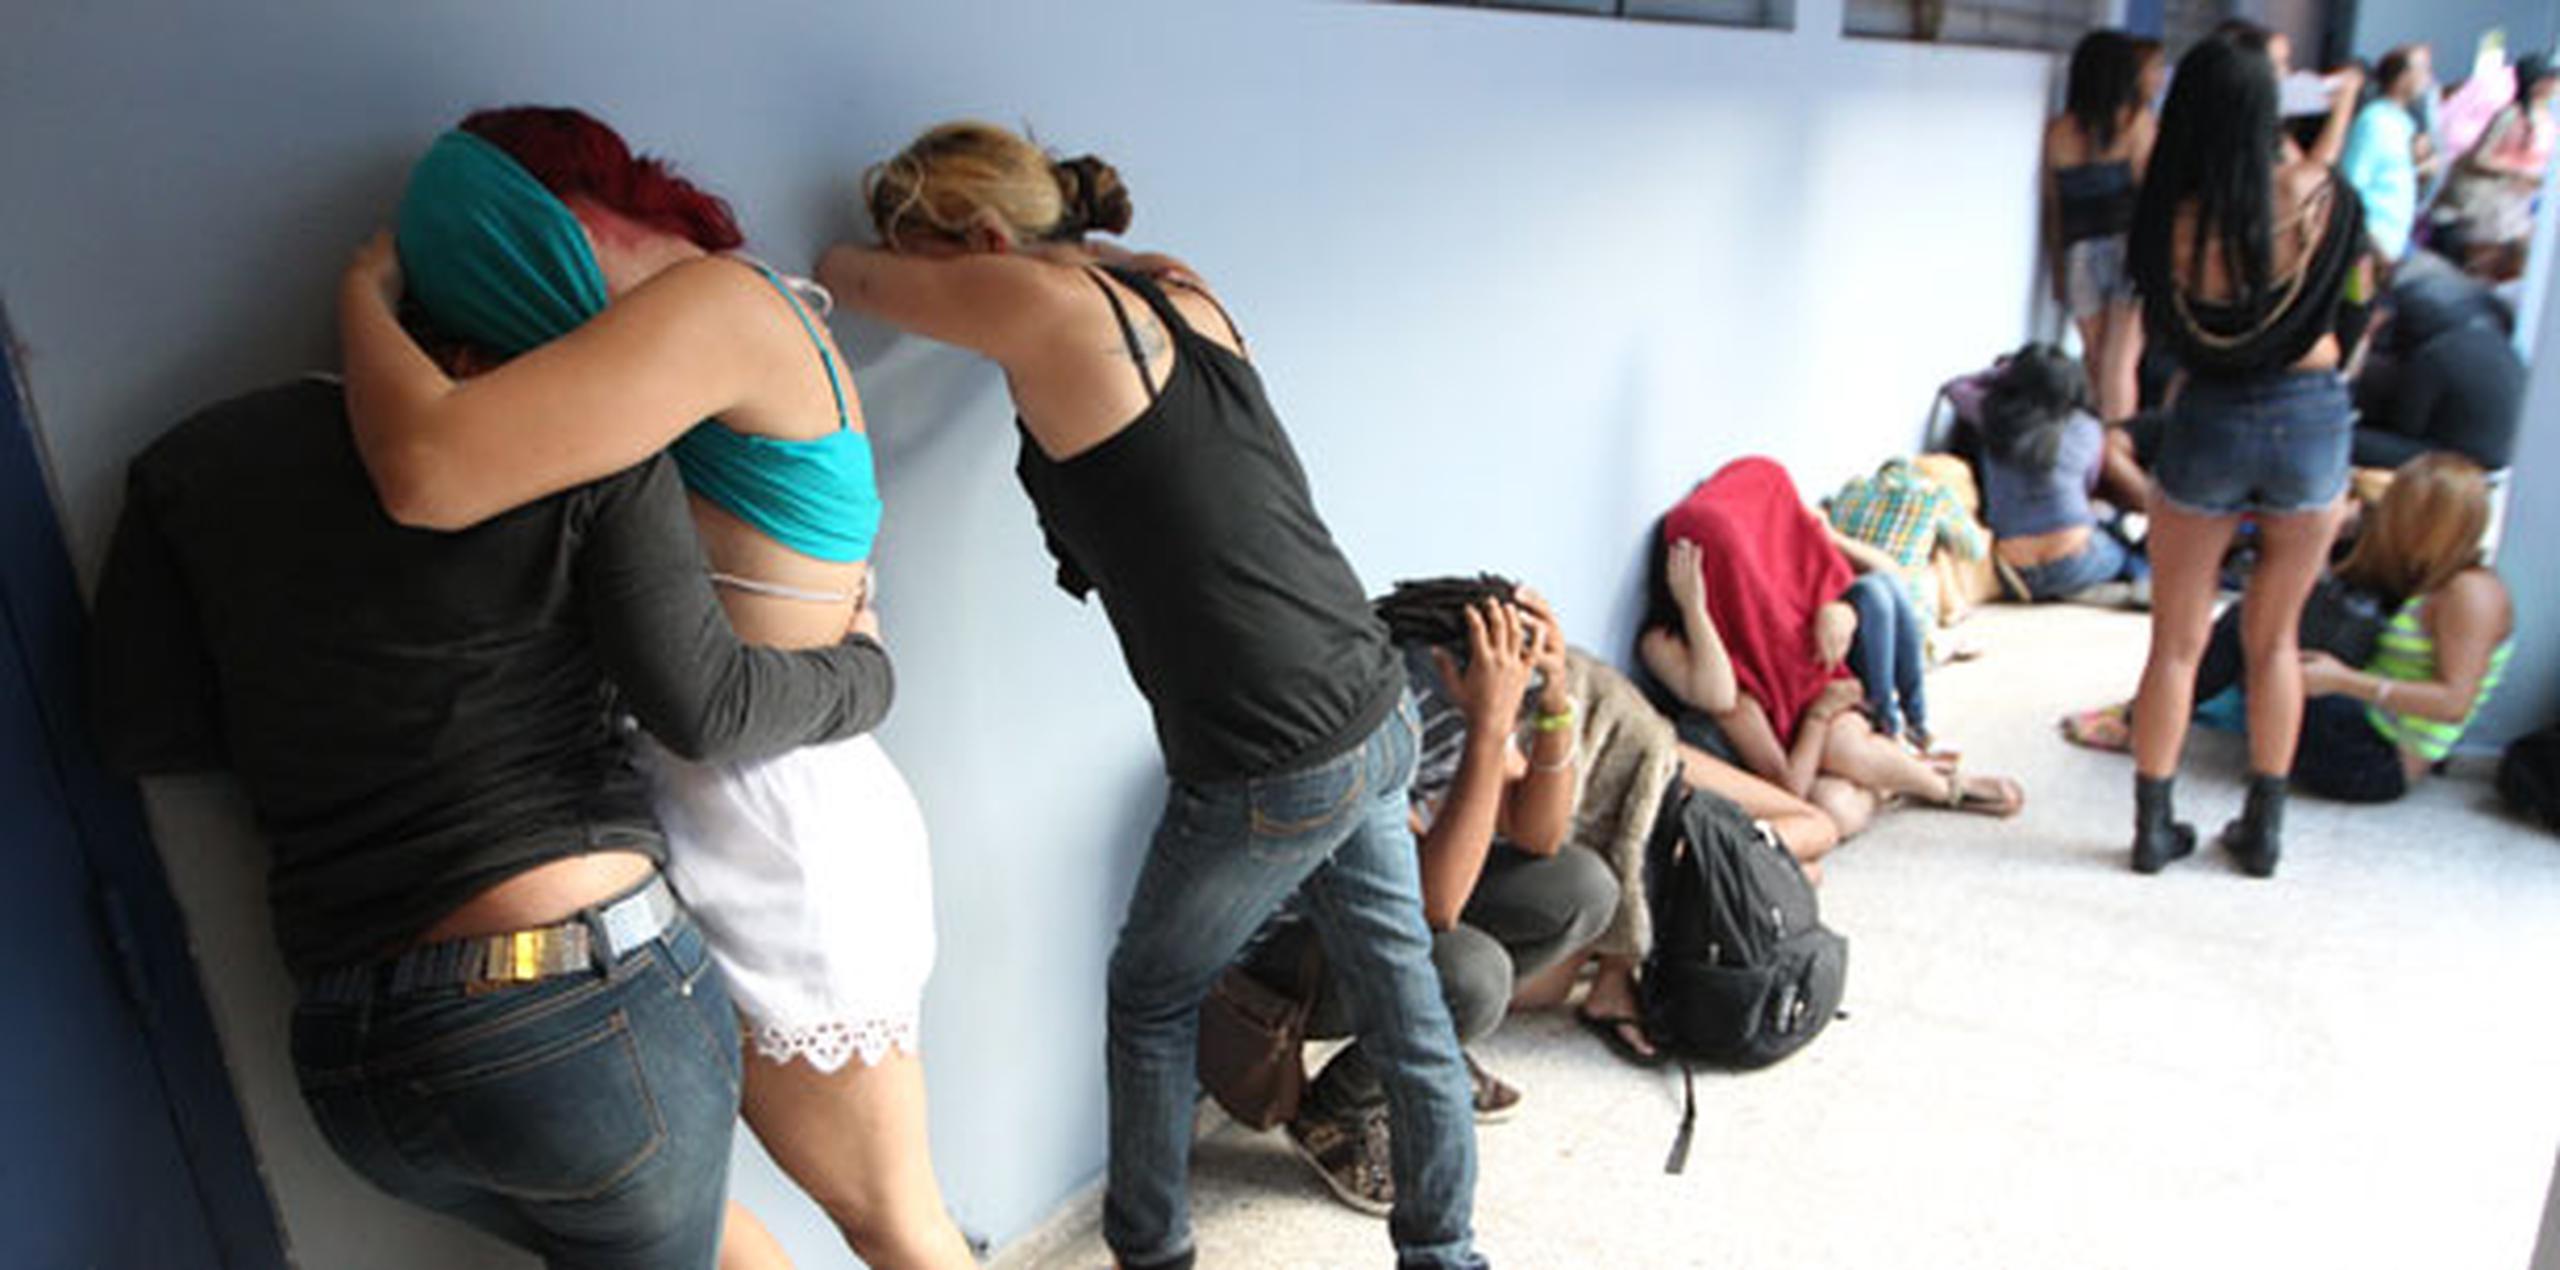 La División Drogas San Juan tiene 77 arrestados y Drogas Carolina tiene 10 arrestados. (alex.figueroa@gfrmedia.com)